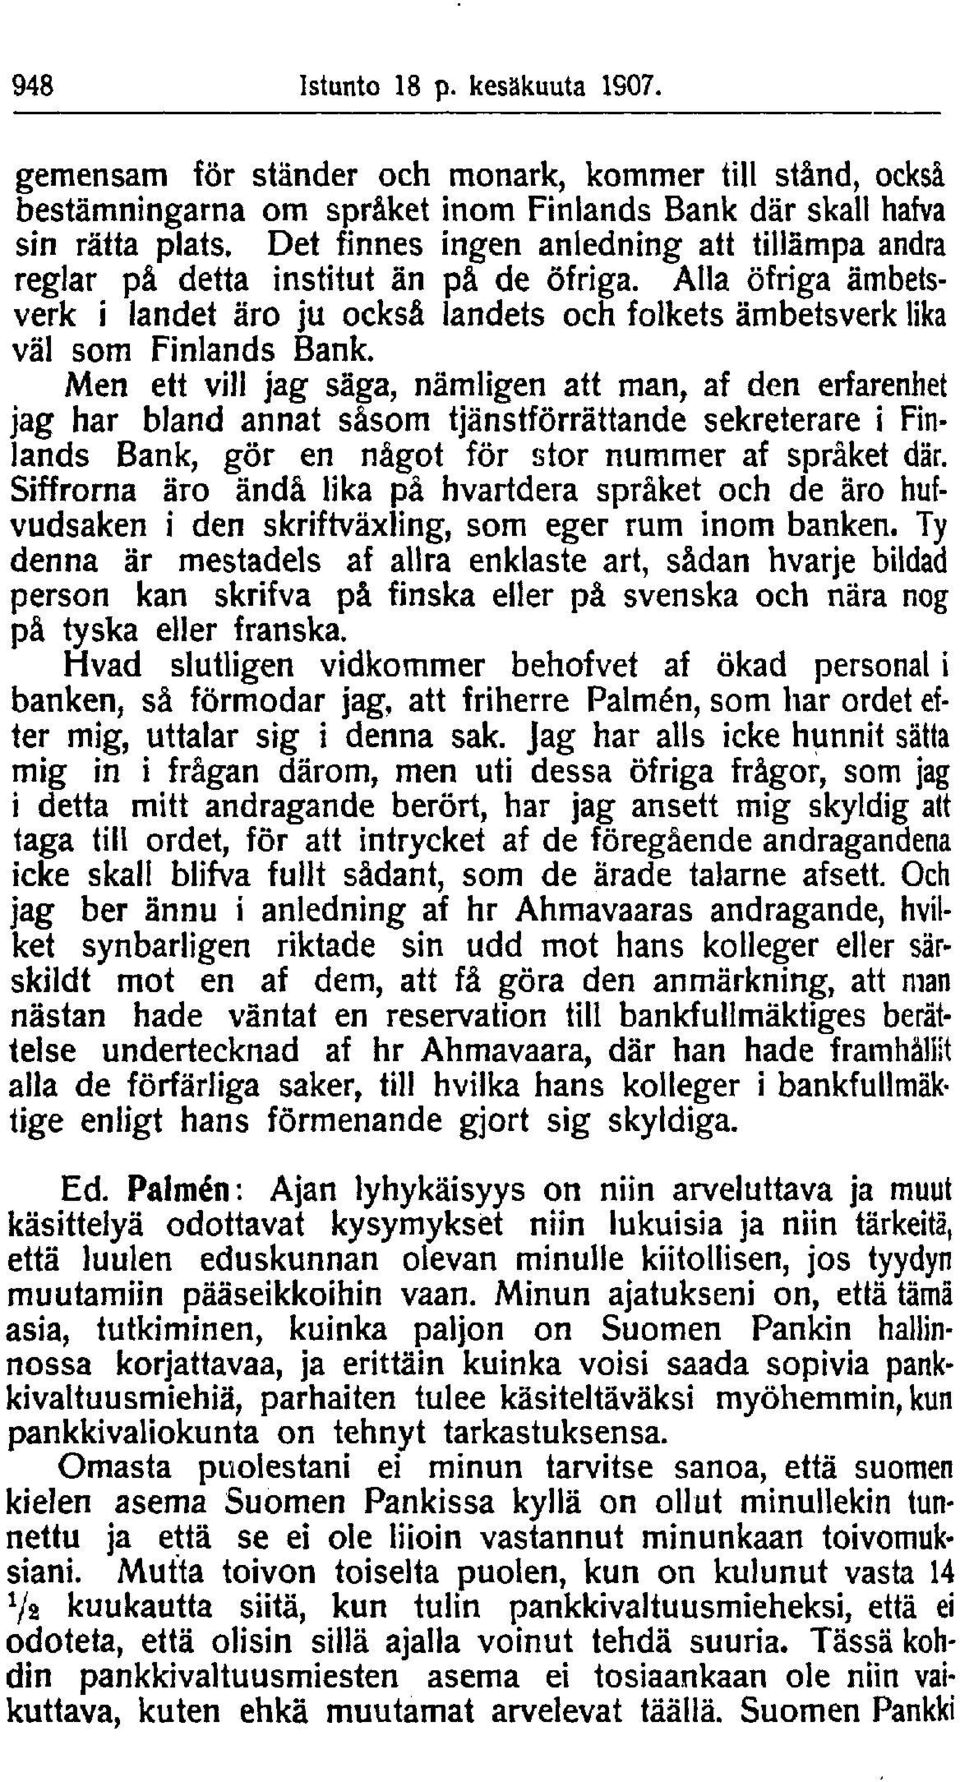 Men ett vill jag säga, nämligen att man, af den erfarenhet jag har bland annat såsom tjänstförrättande sekreterare i Finlands Bank, gör en något för stor nummer af språket där.